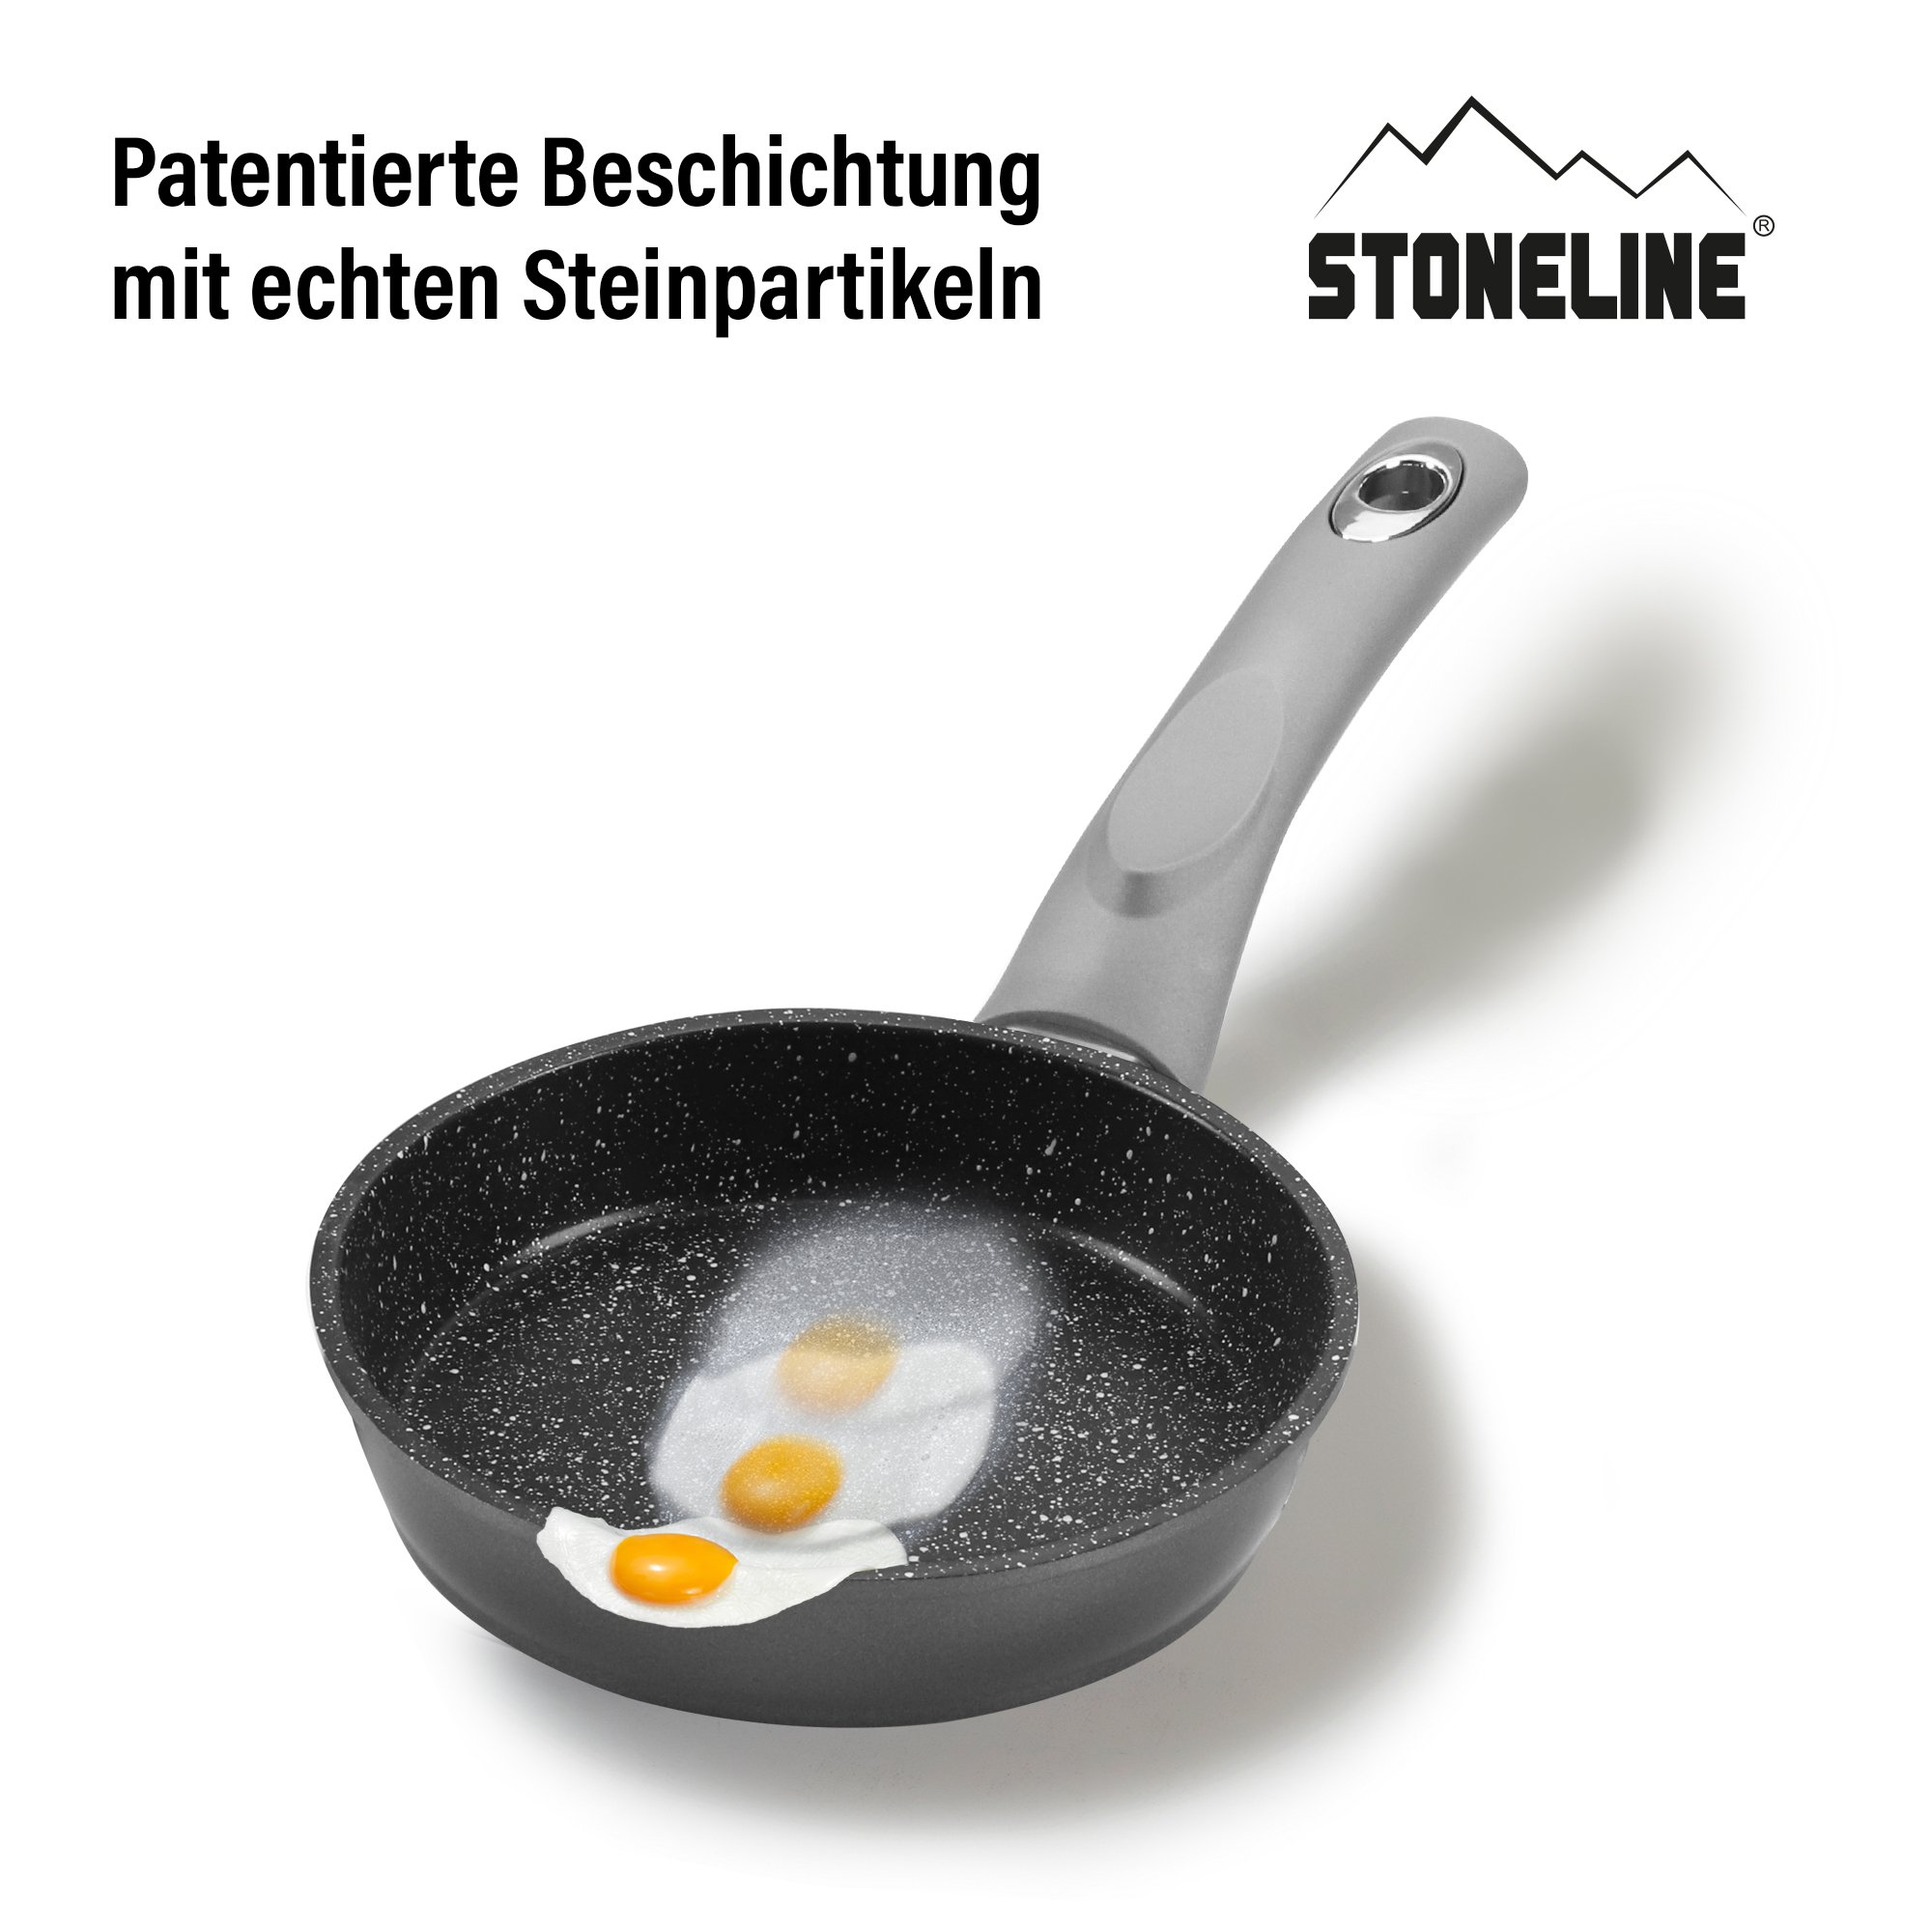 STONELINE® Gourmundo sartén 14 cm, sartén antiadherente para tortillas, apta para inducción